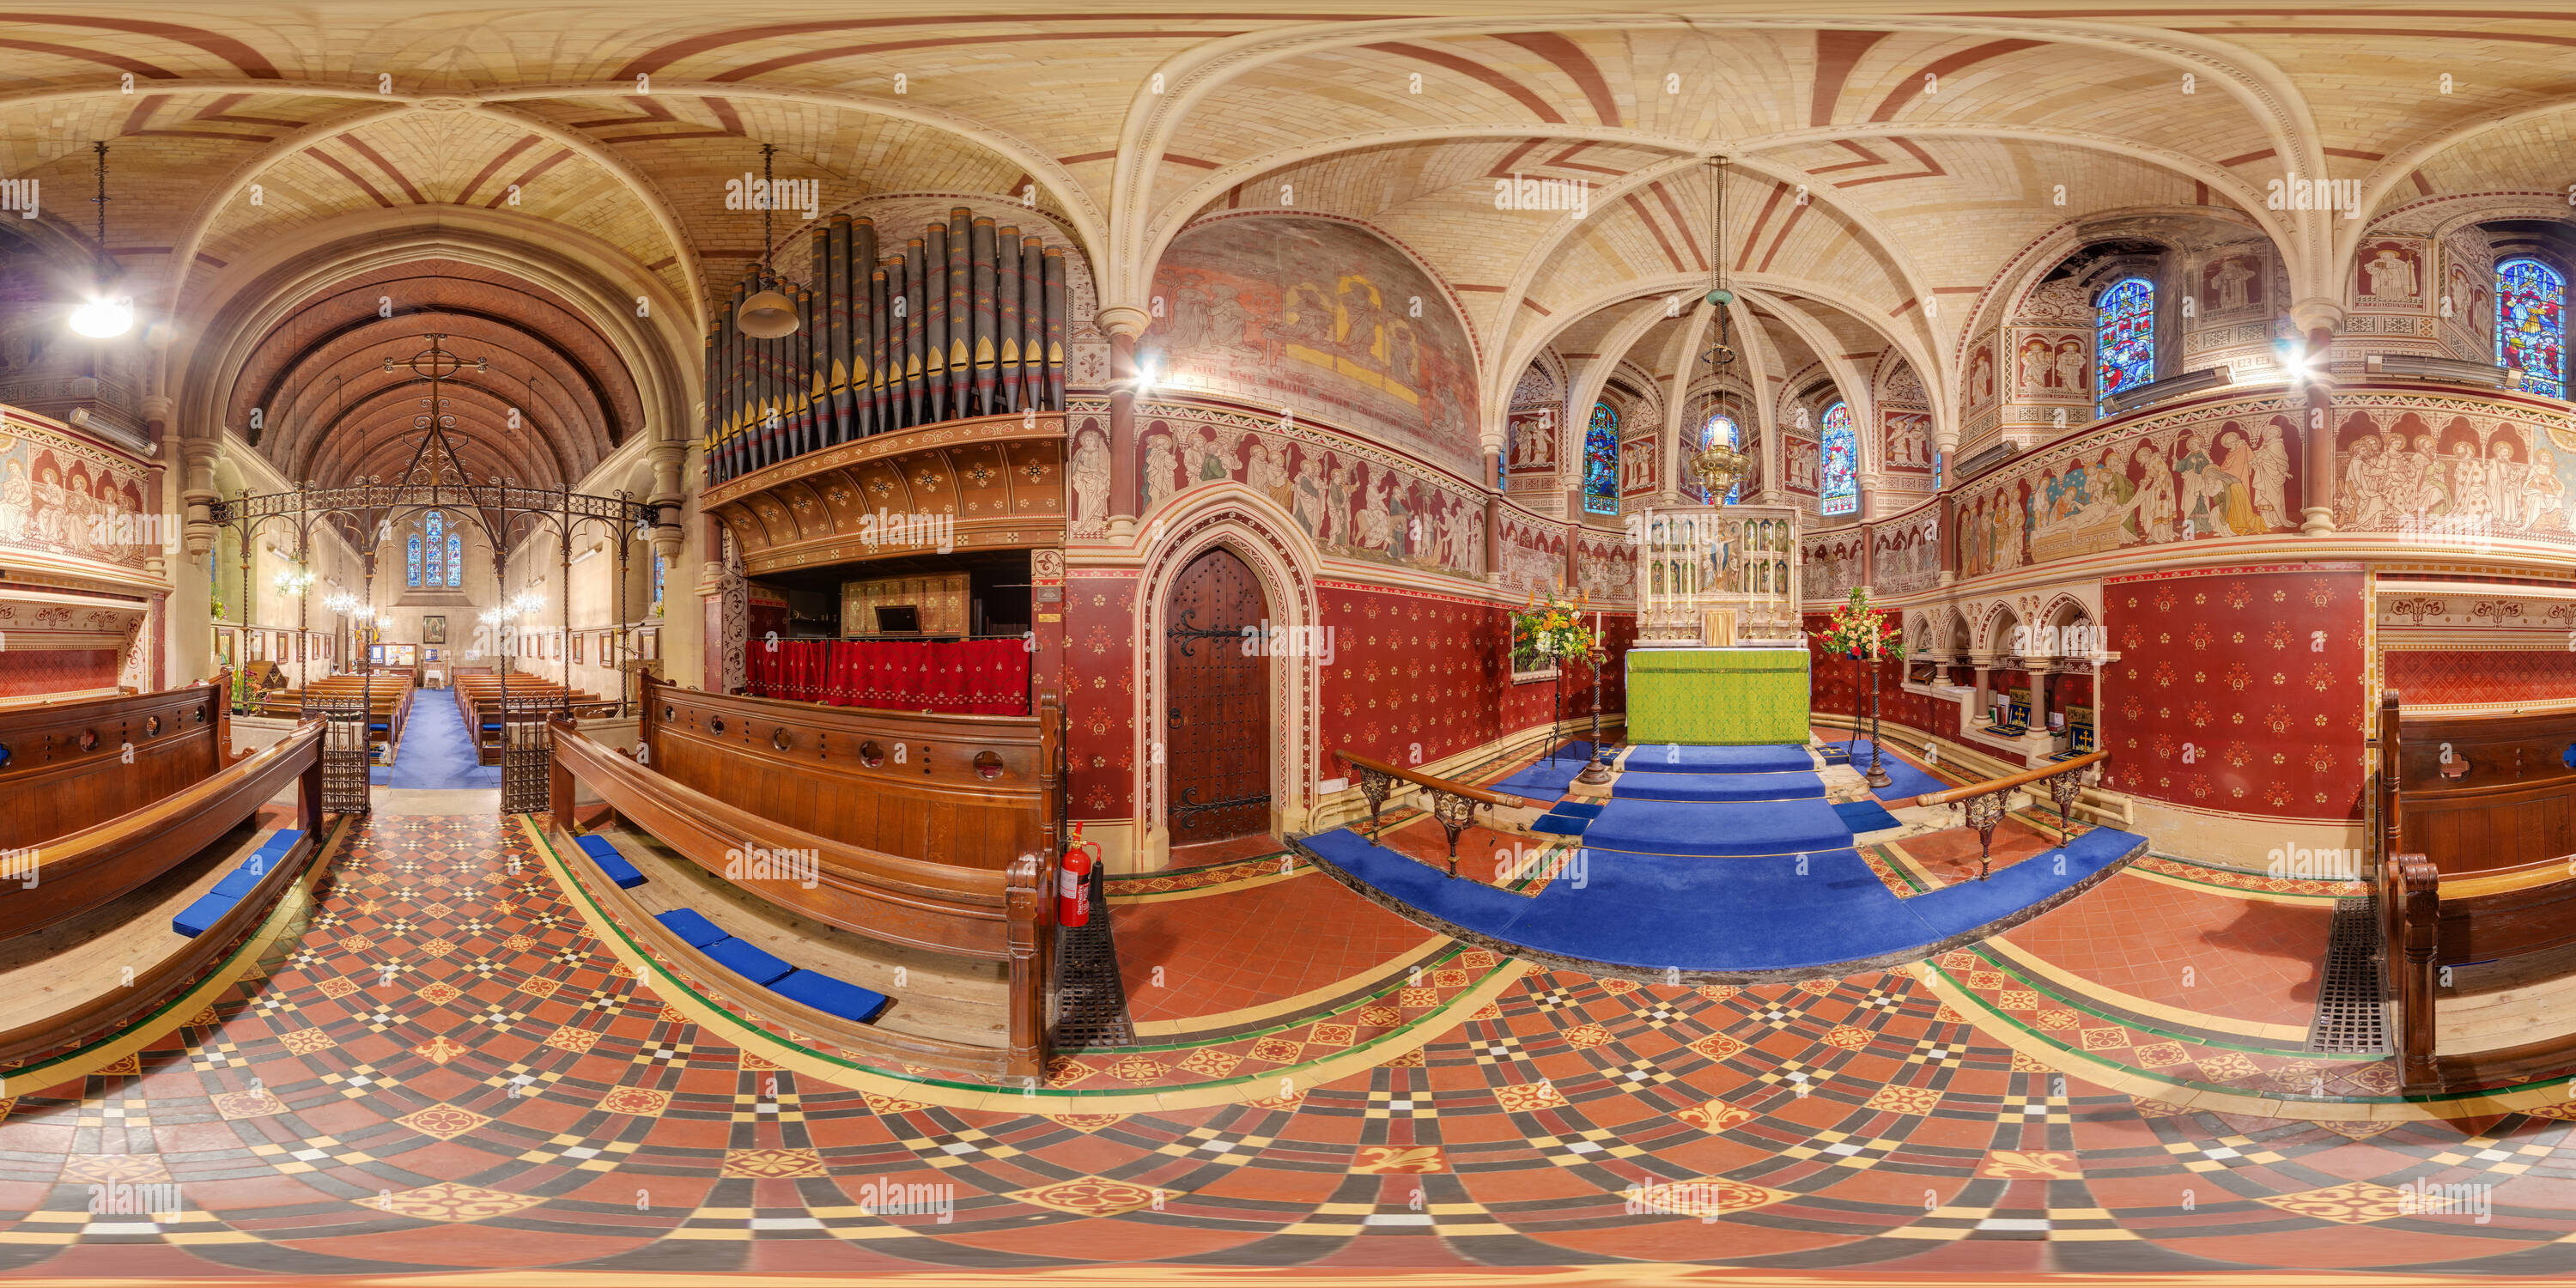 360 Grad Panorama Ansicht von High Victorian Gothic Revival Kirche